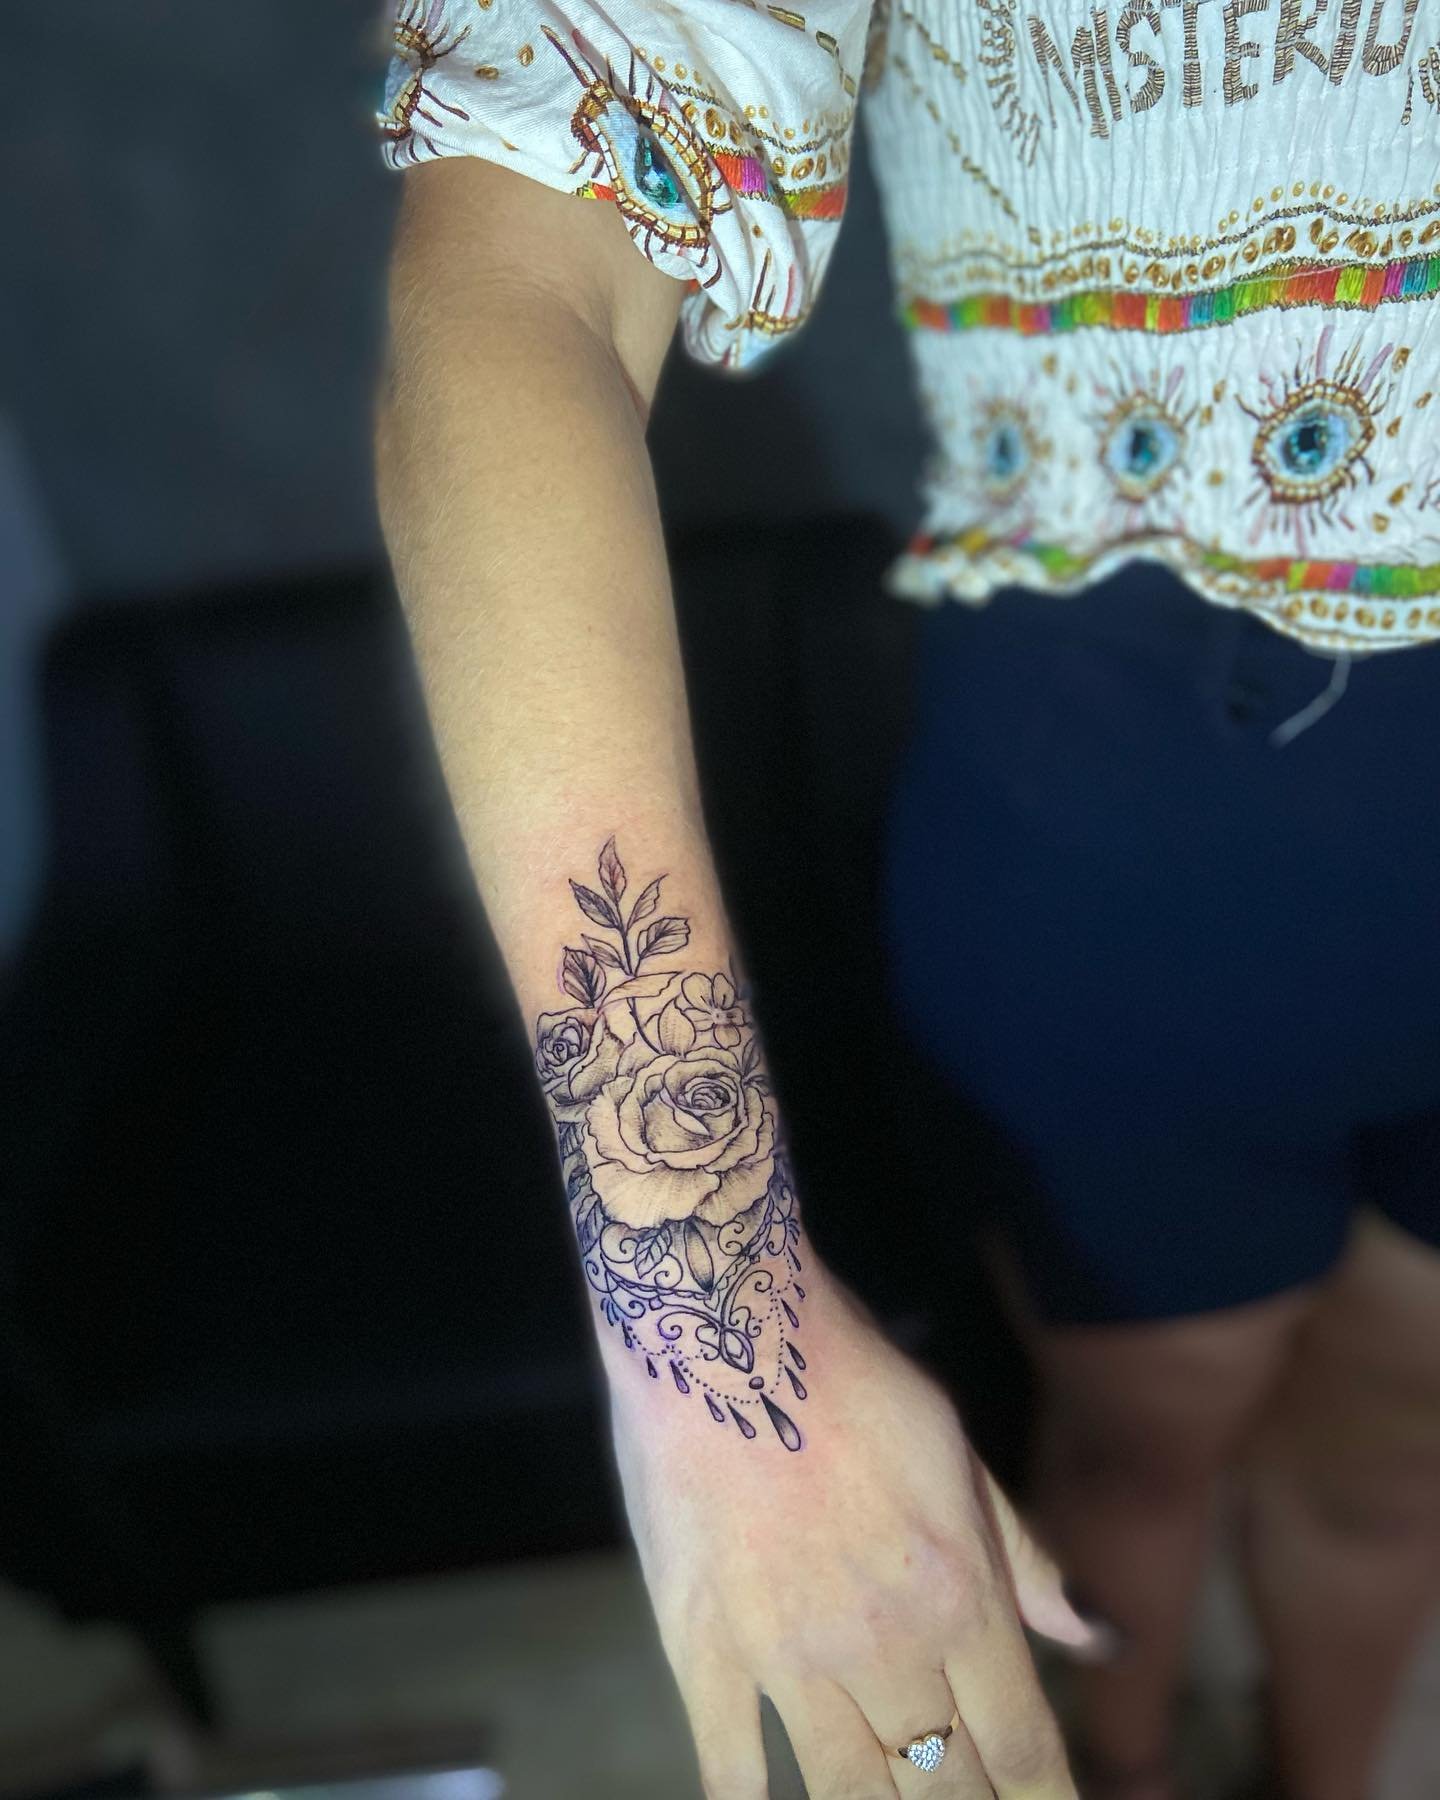 Tatuagem mandala na mão com rosas e arabescos. Tattoo super delicada  #submundota… – Submundo